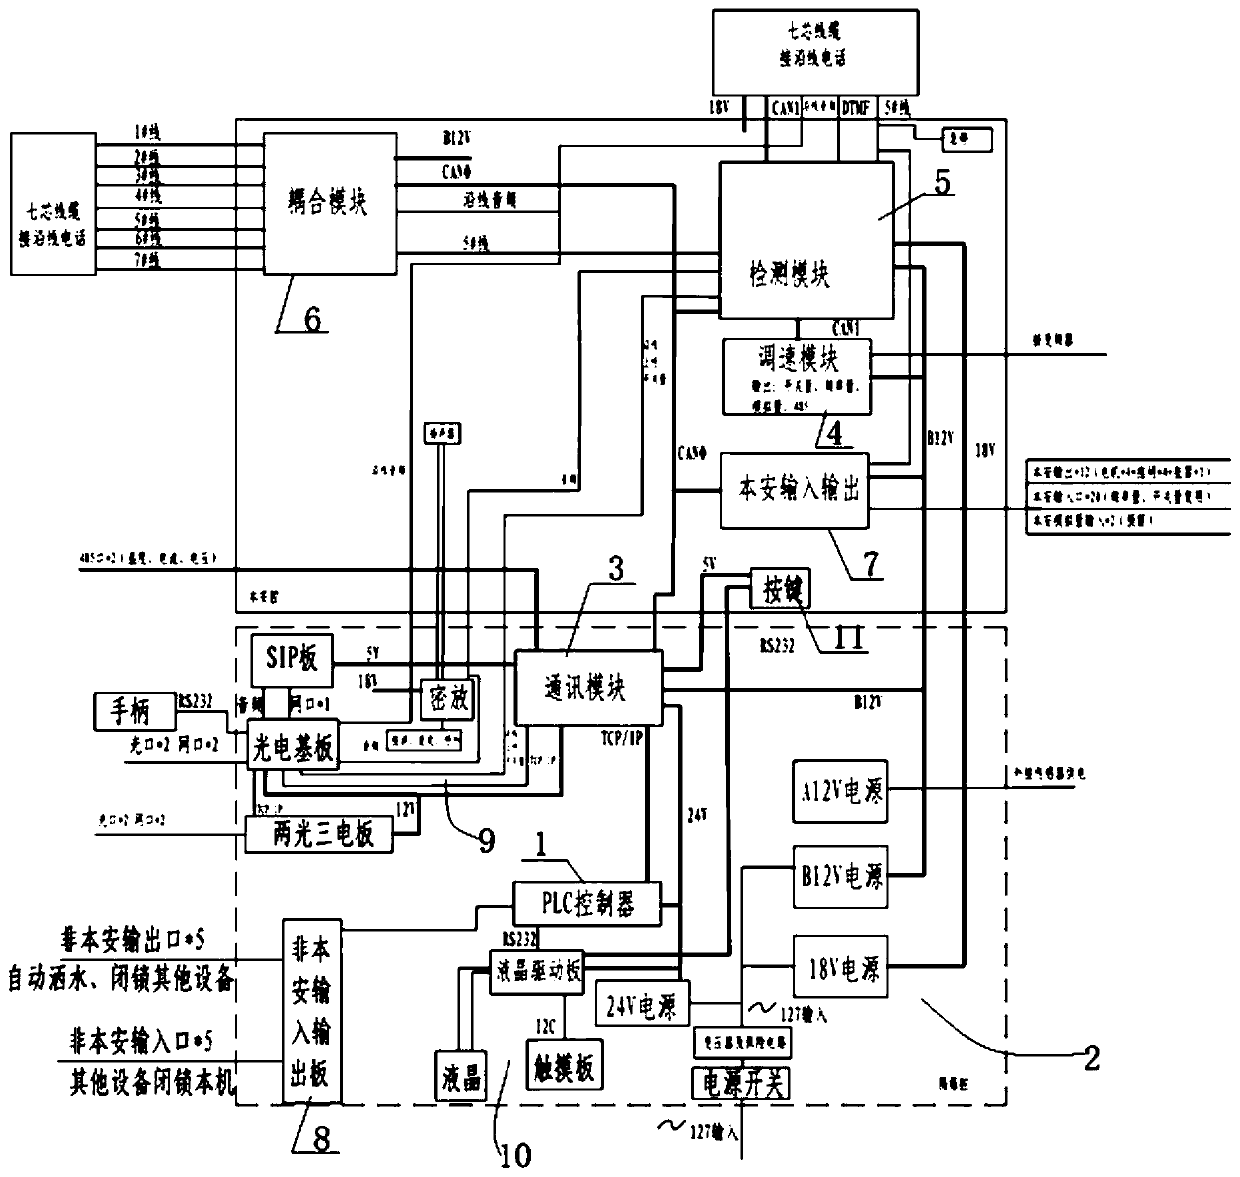 PLC architecture for mine communication control system and mine communication control system